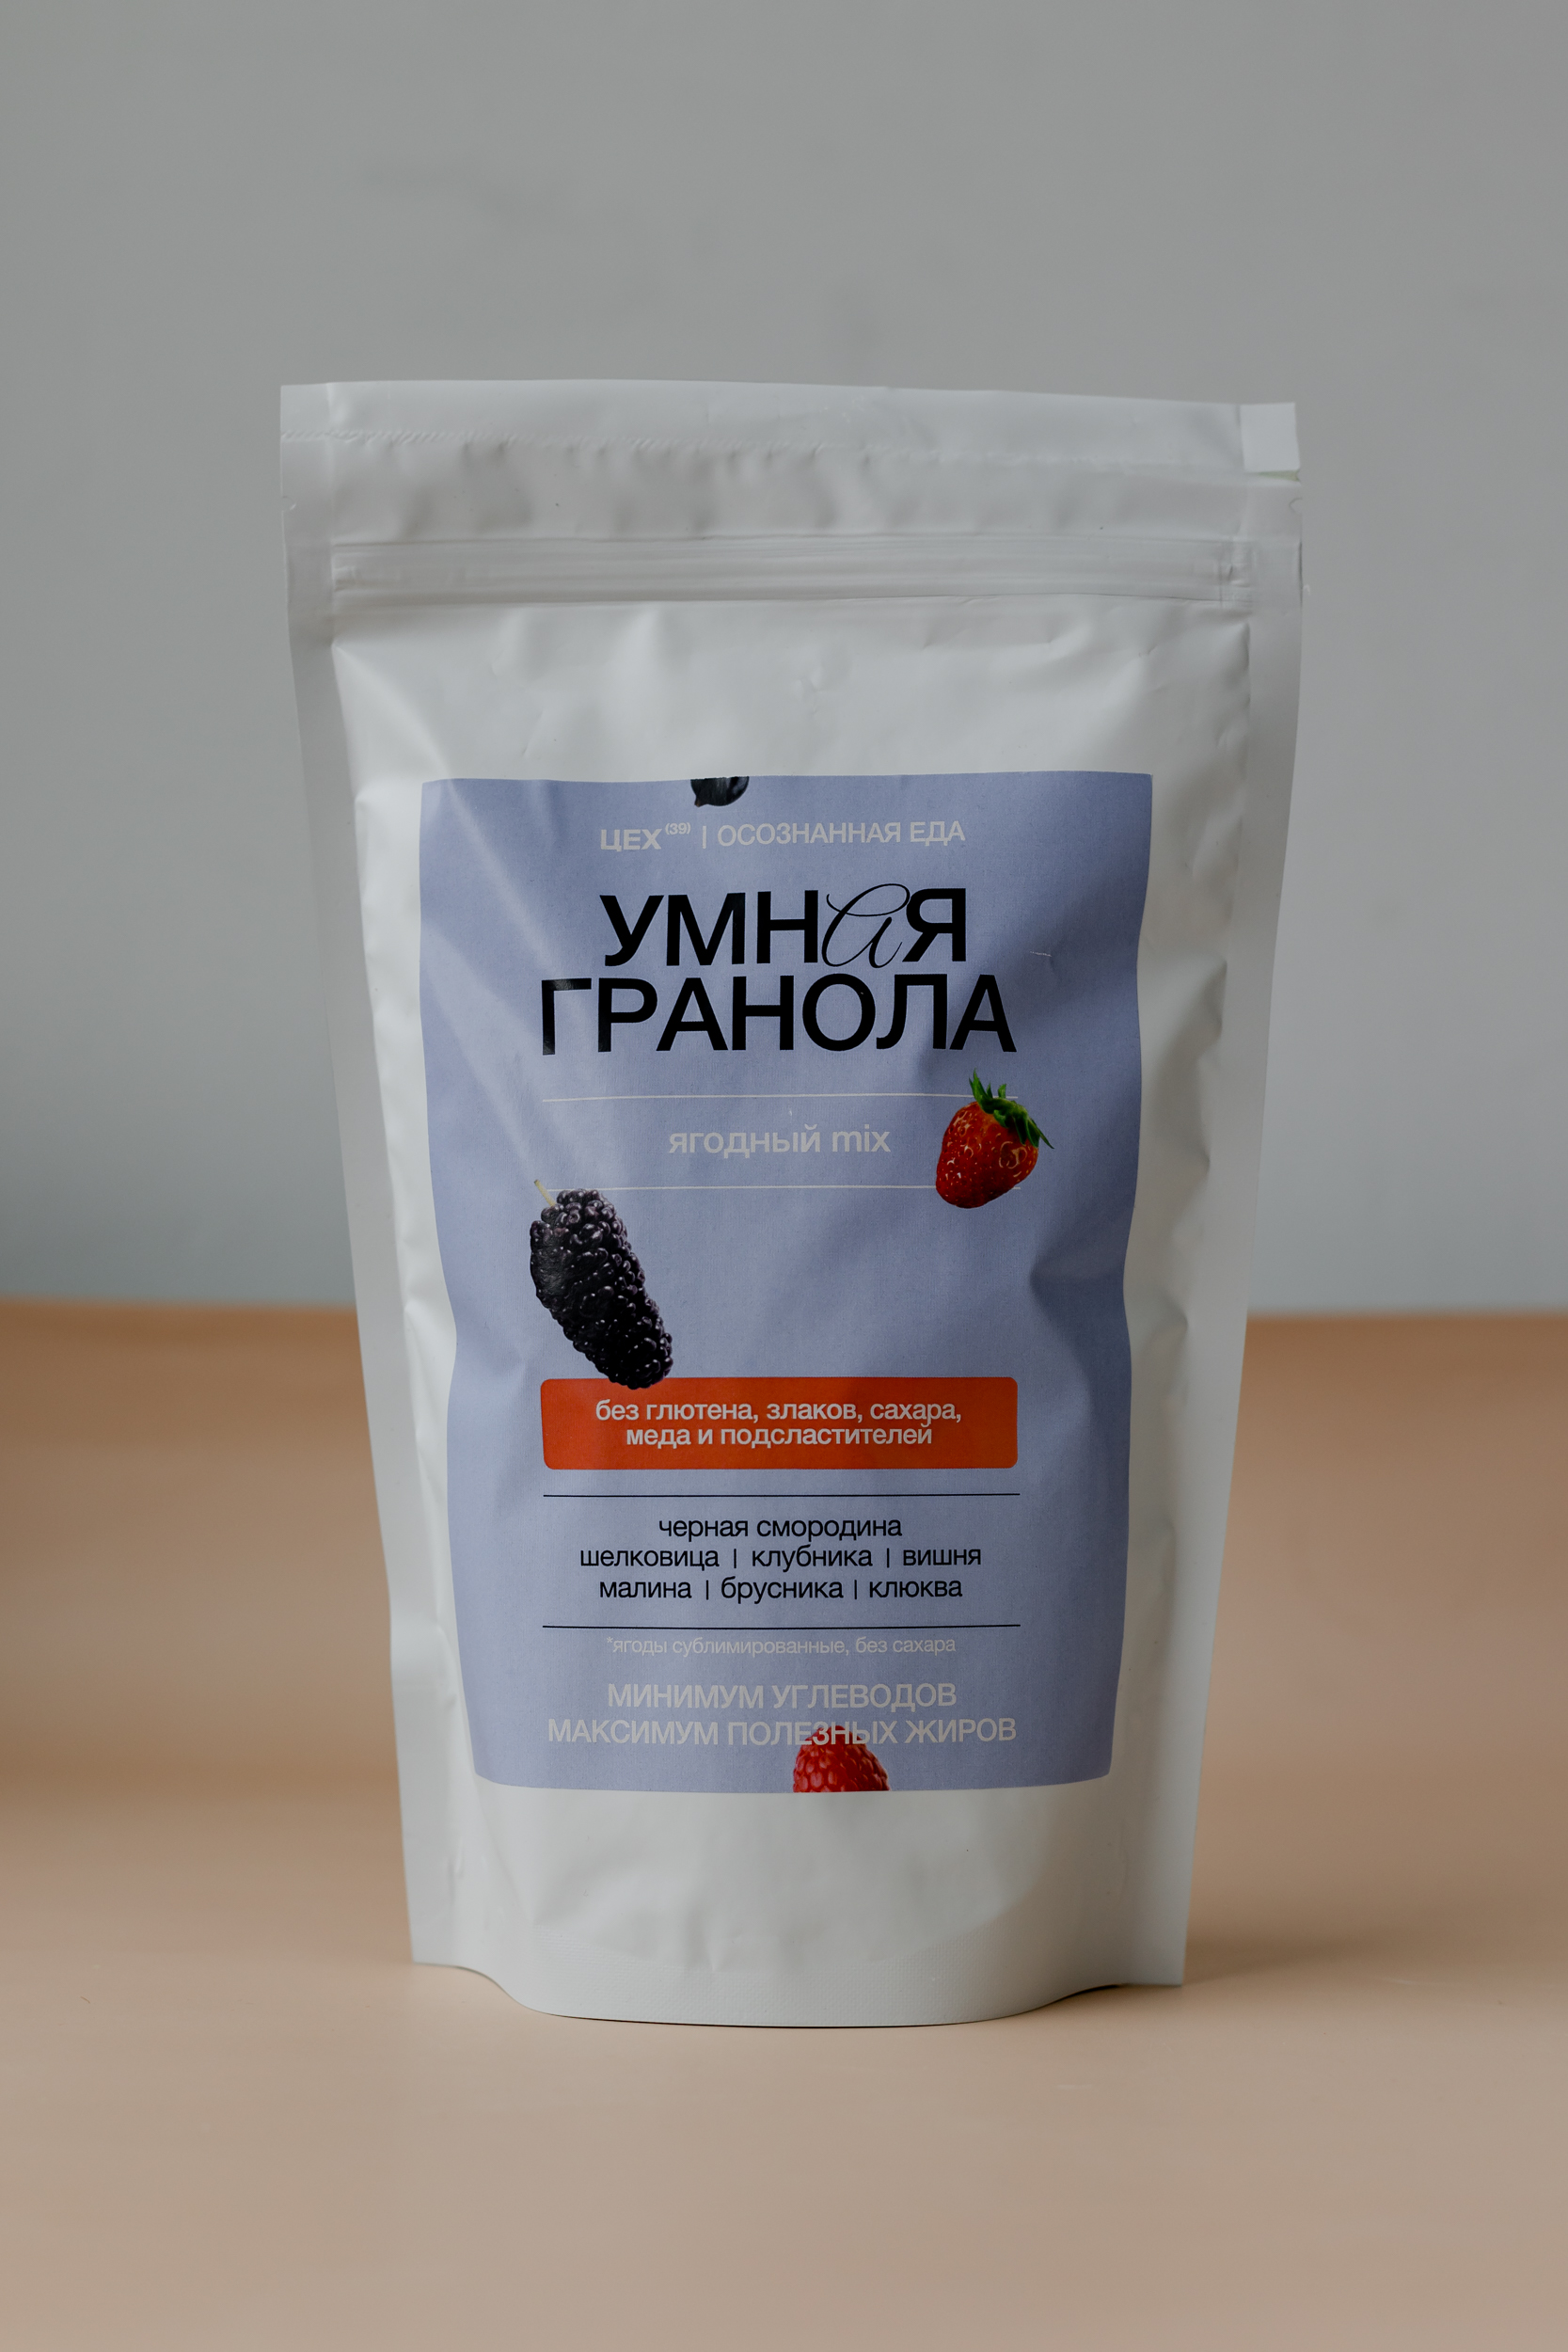 Умная ореховая гранола ягодный mix ЦЕХ(39) 450гр